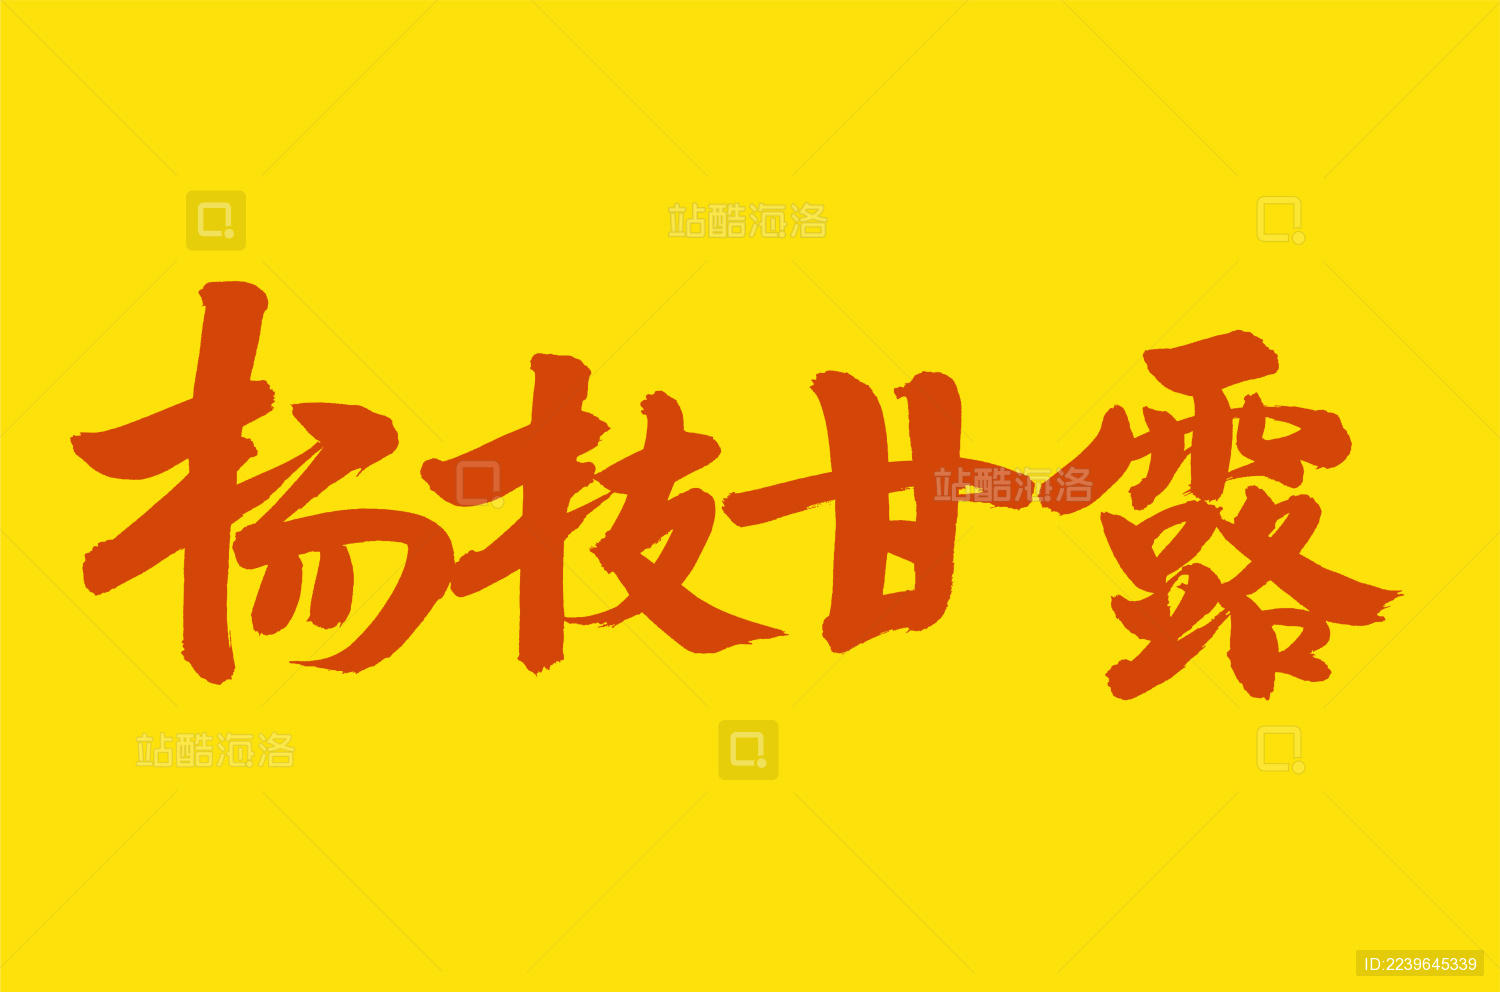 创意手写杨戬字体艺术字平面设计素材下载可商用